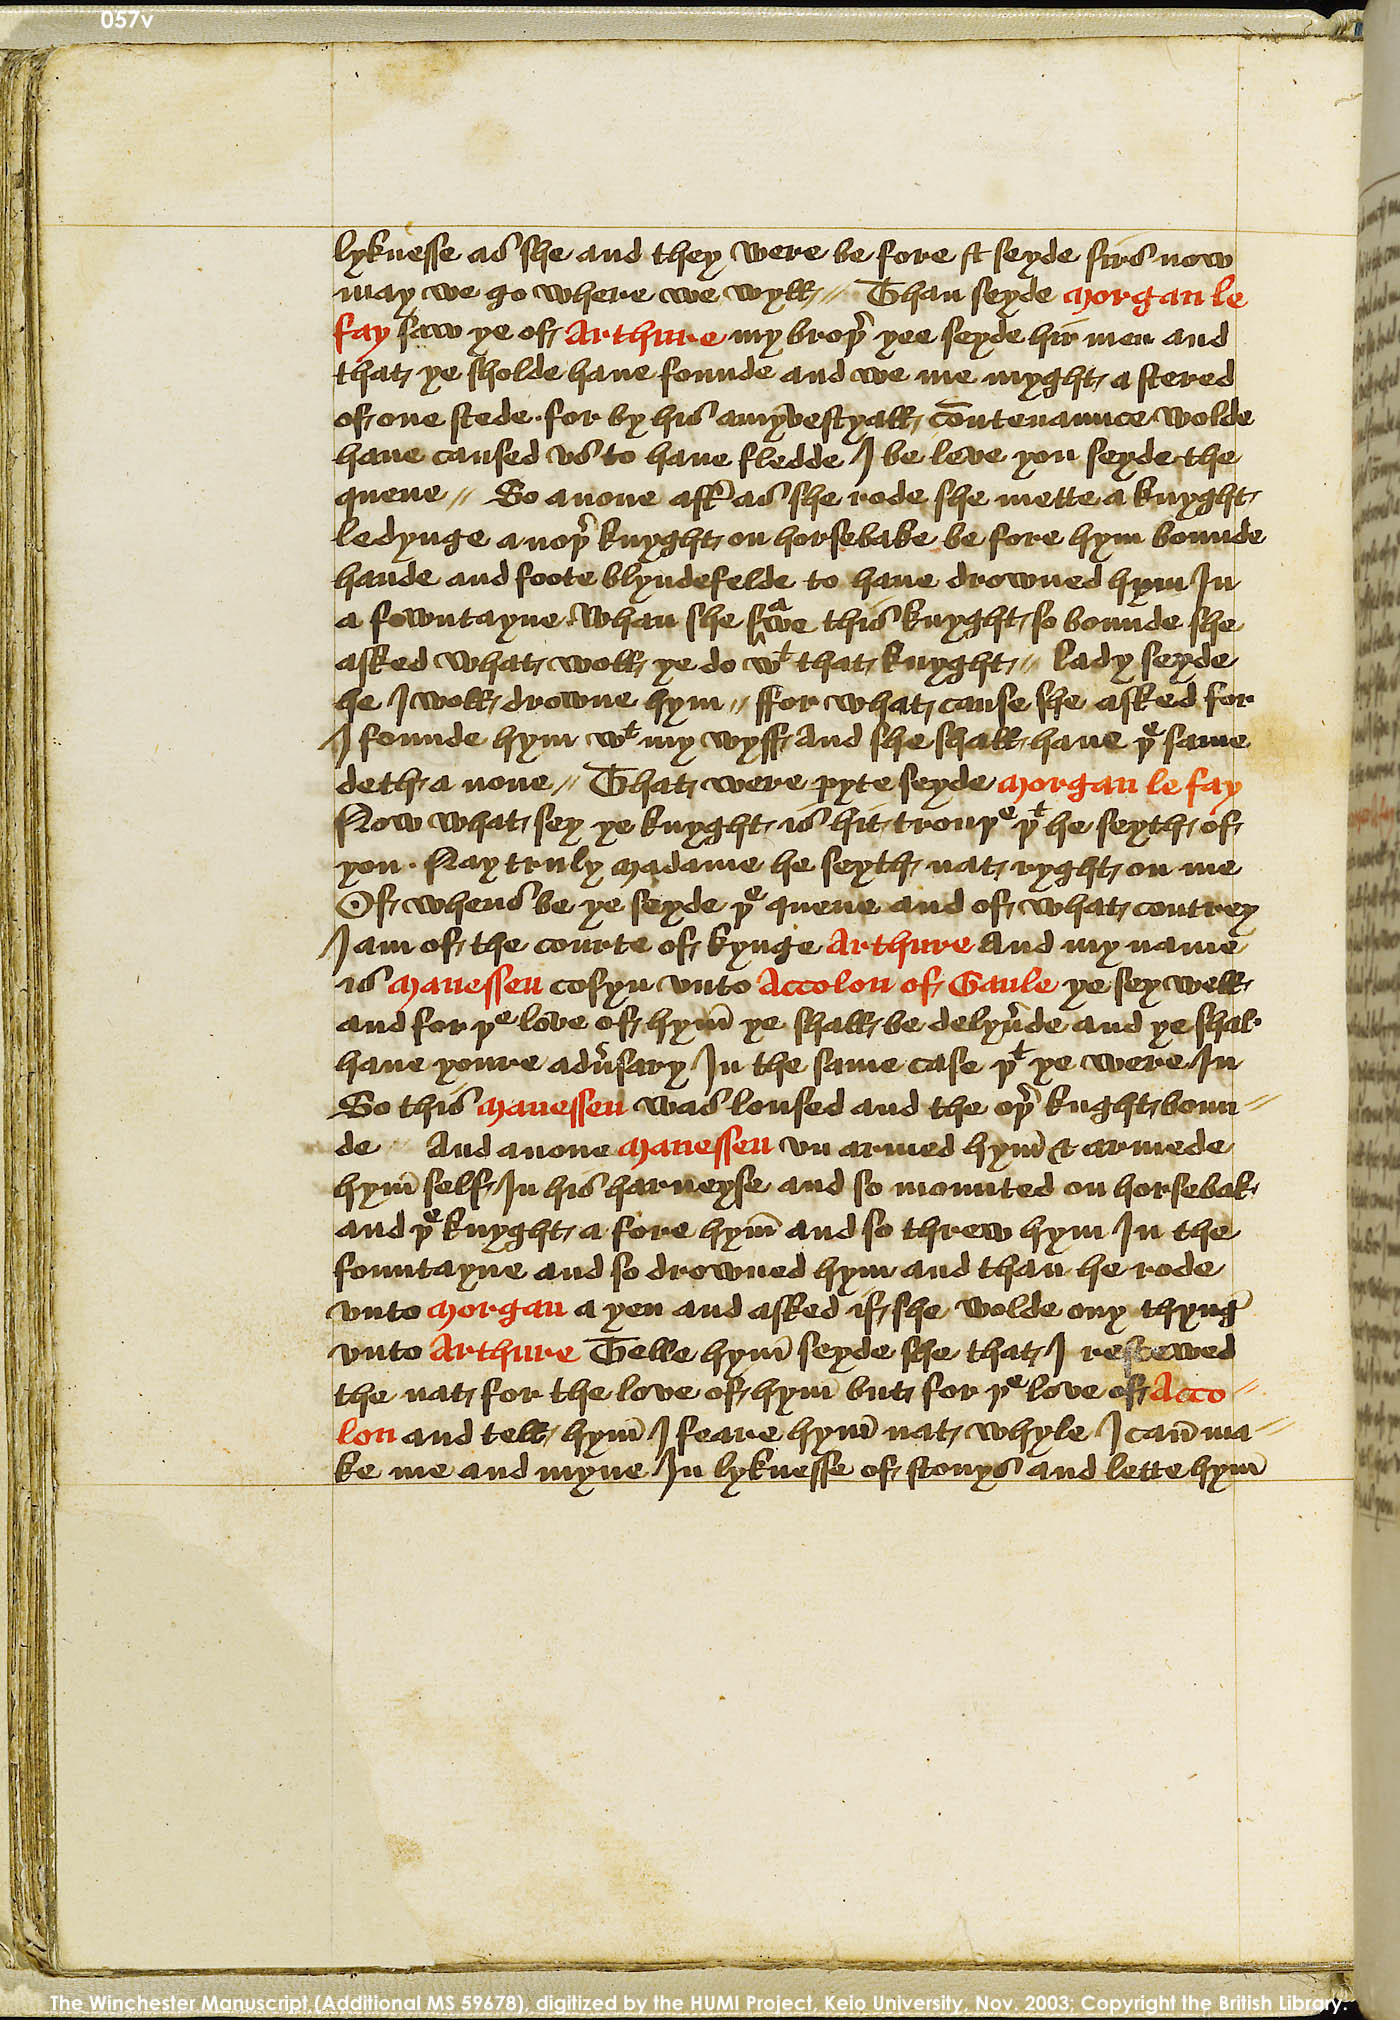 Folio 57v